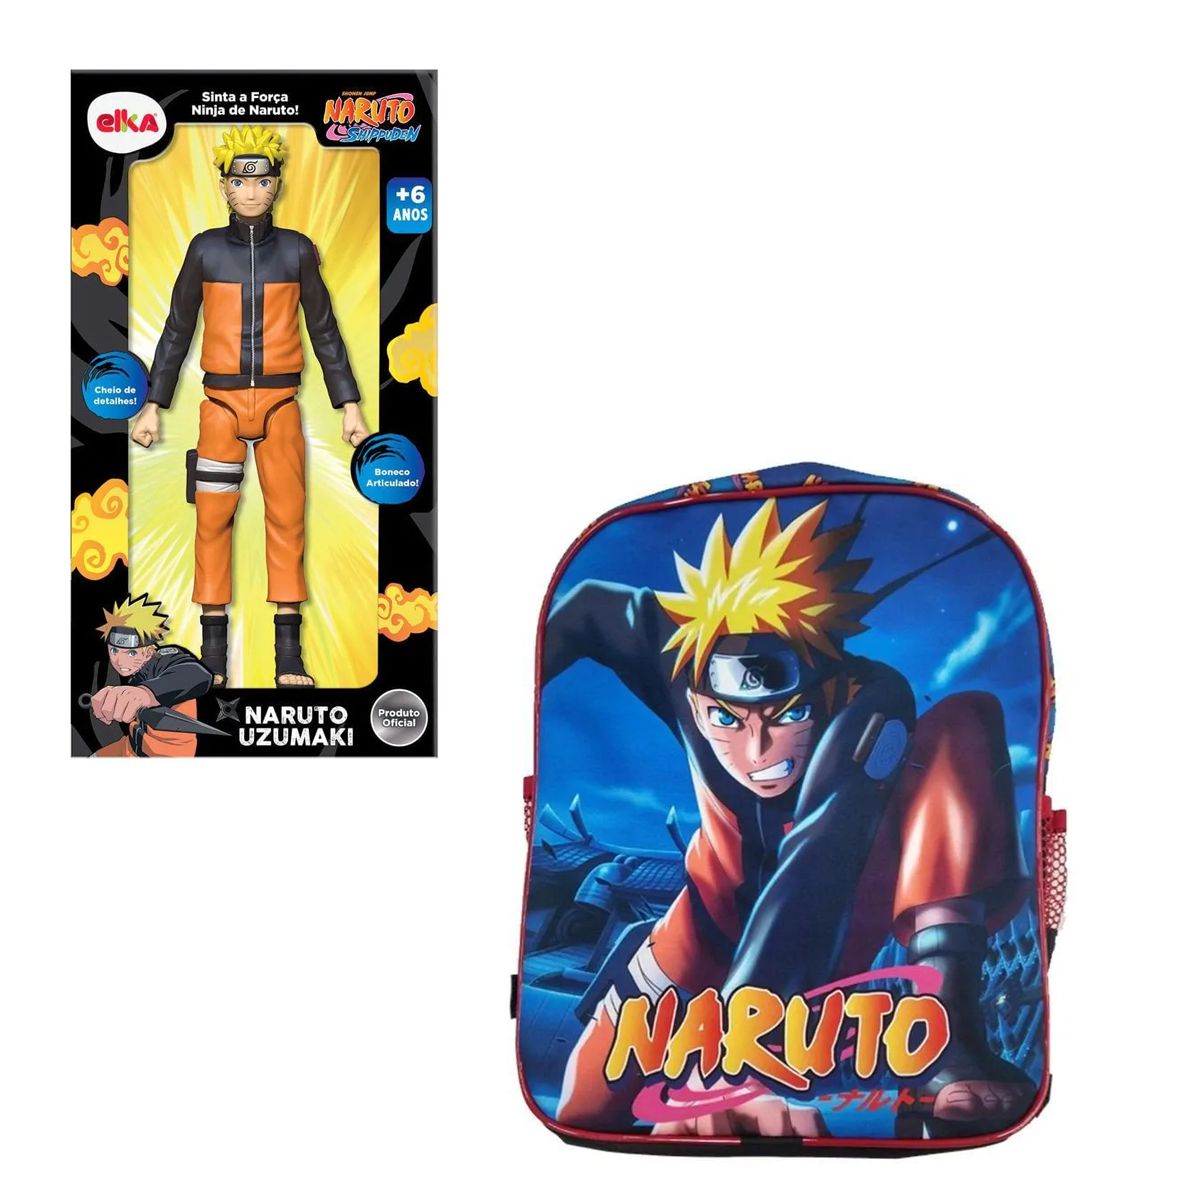 Boneco Naruto em Oferta